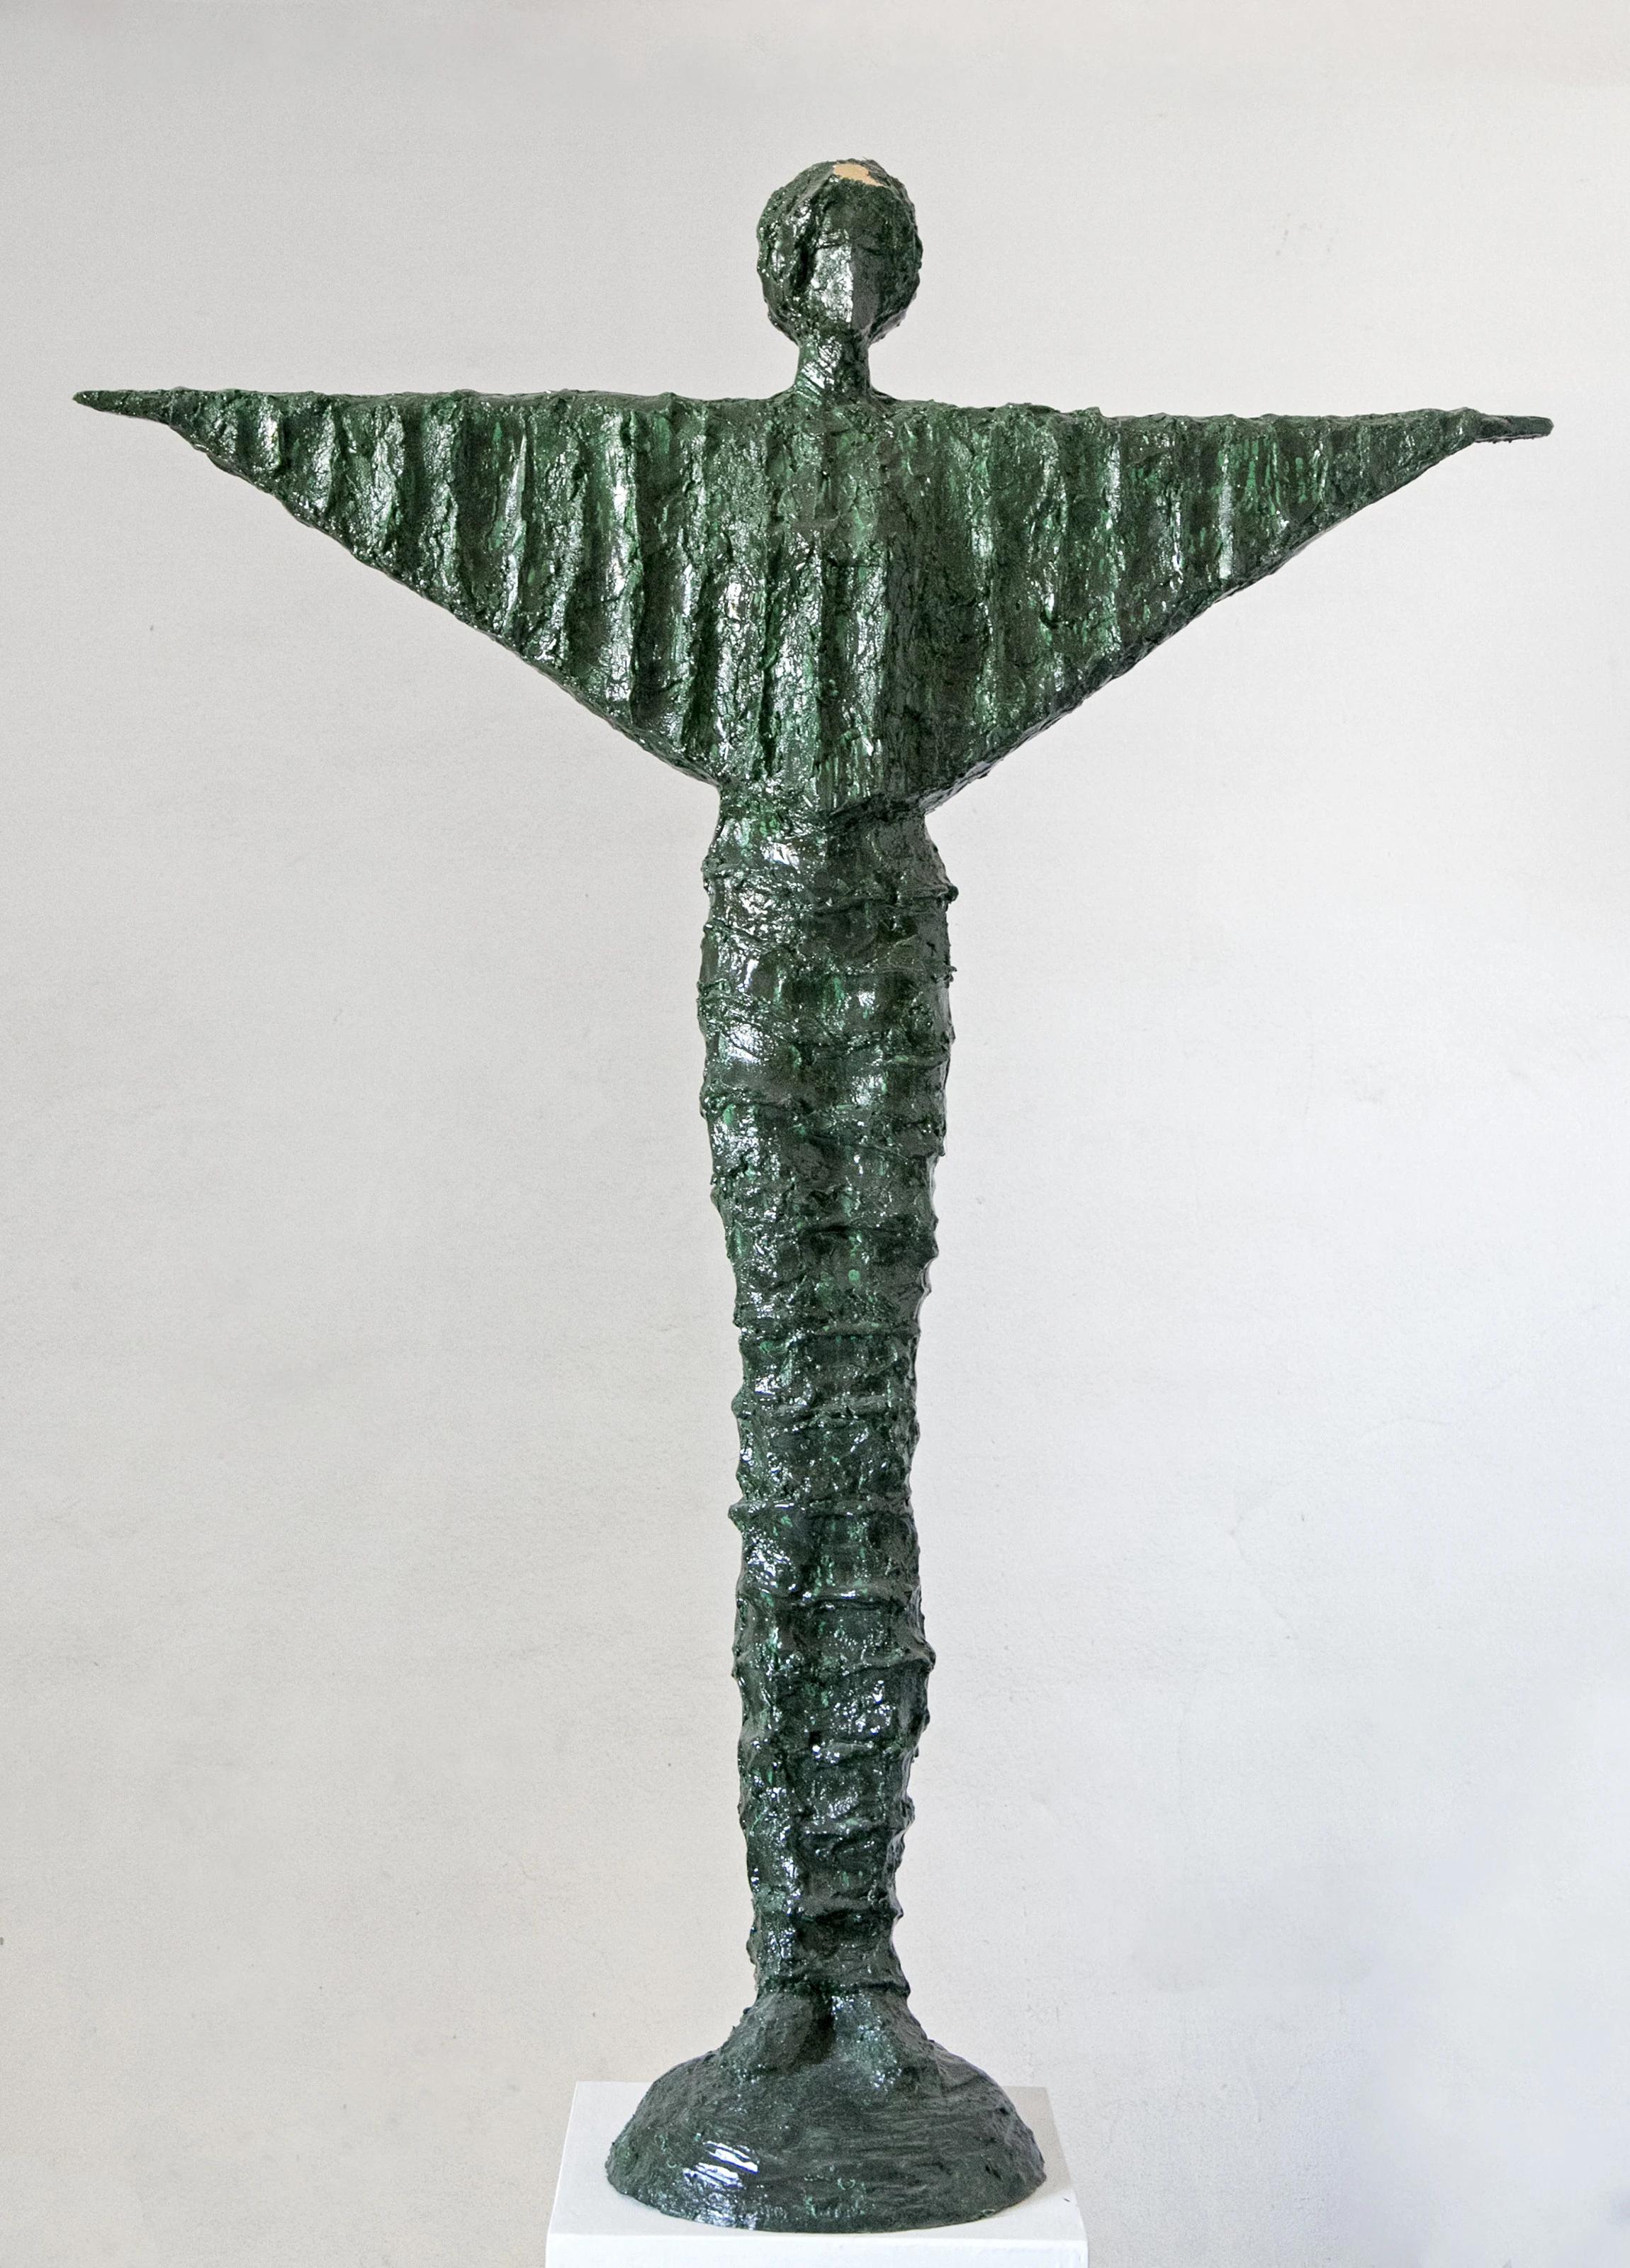 Sculpture "Freedom I" 49" x 38" x 6" inch by Sarkis Tossonian


Sarkis Tossoonian est né à Alexandrie en 1953. Il est diplômé de la Faculté des Beaux-Arts/Sculpture en 1979. Il a commencé à exposer dans des expositions individuelles et collectives à